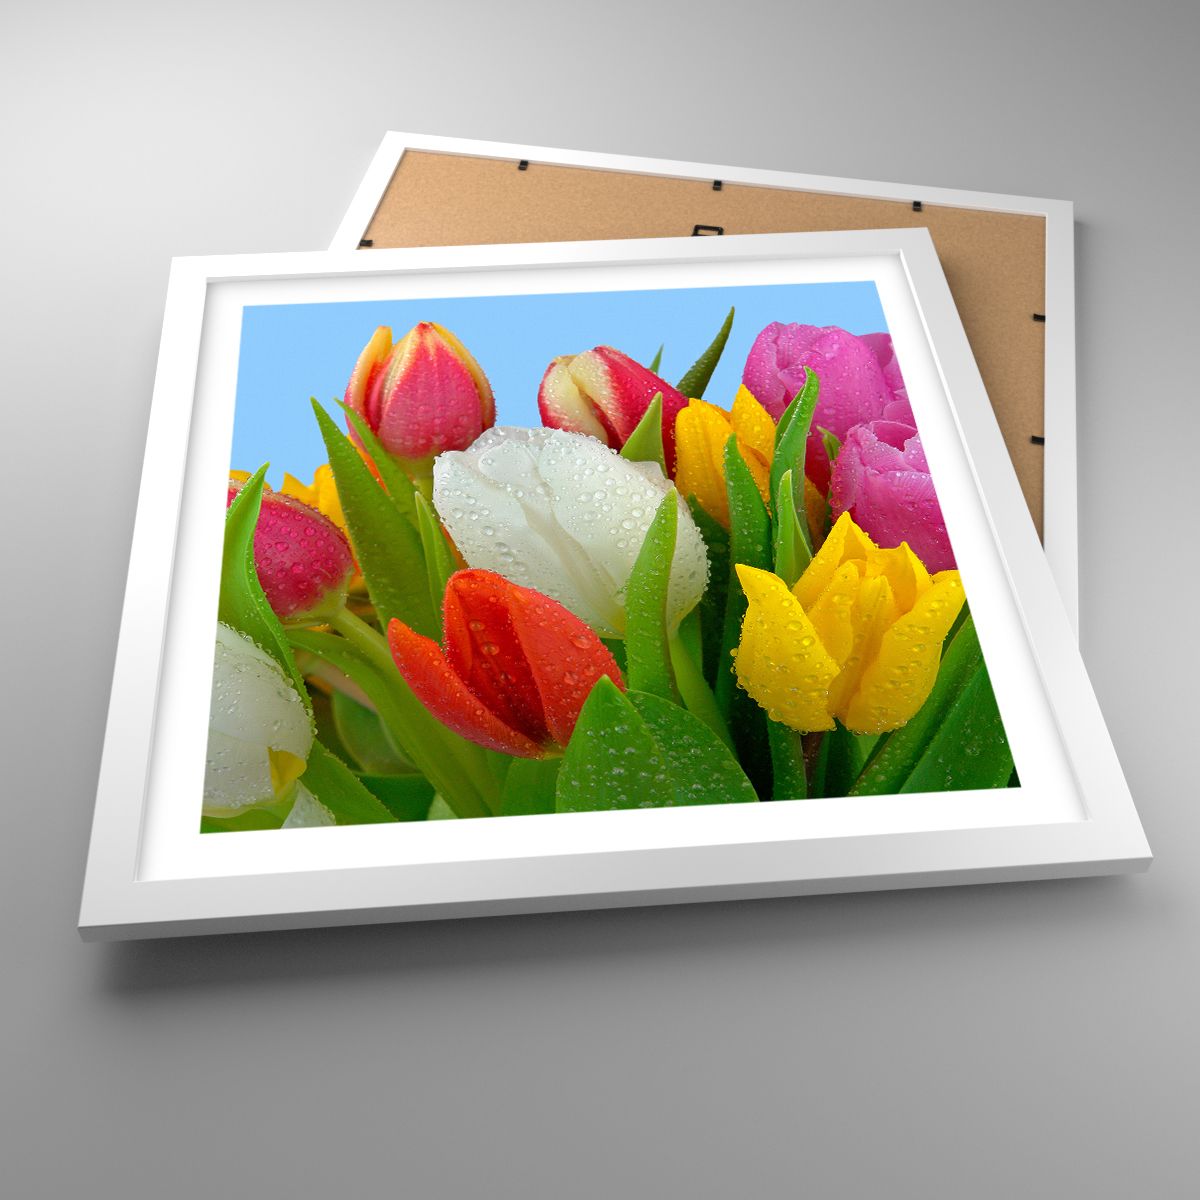 Affiche Tulipes, Affiche Fleurs, Affiche Bouquet De Fleurs, Affiche La Nature, Affiche Fleurs Colorées